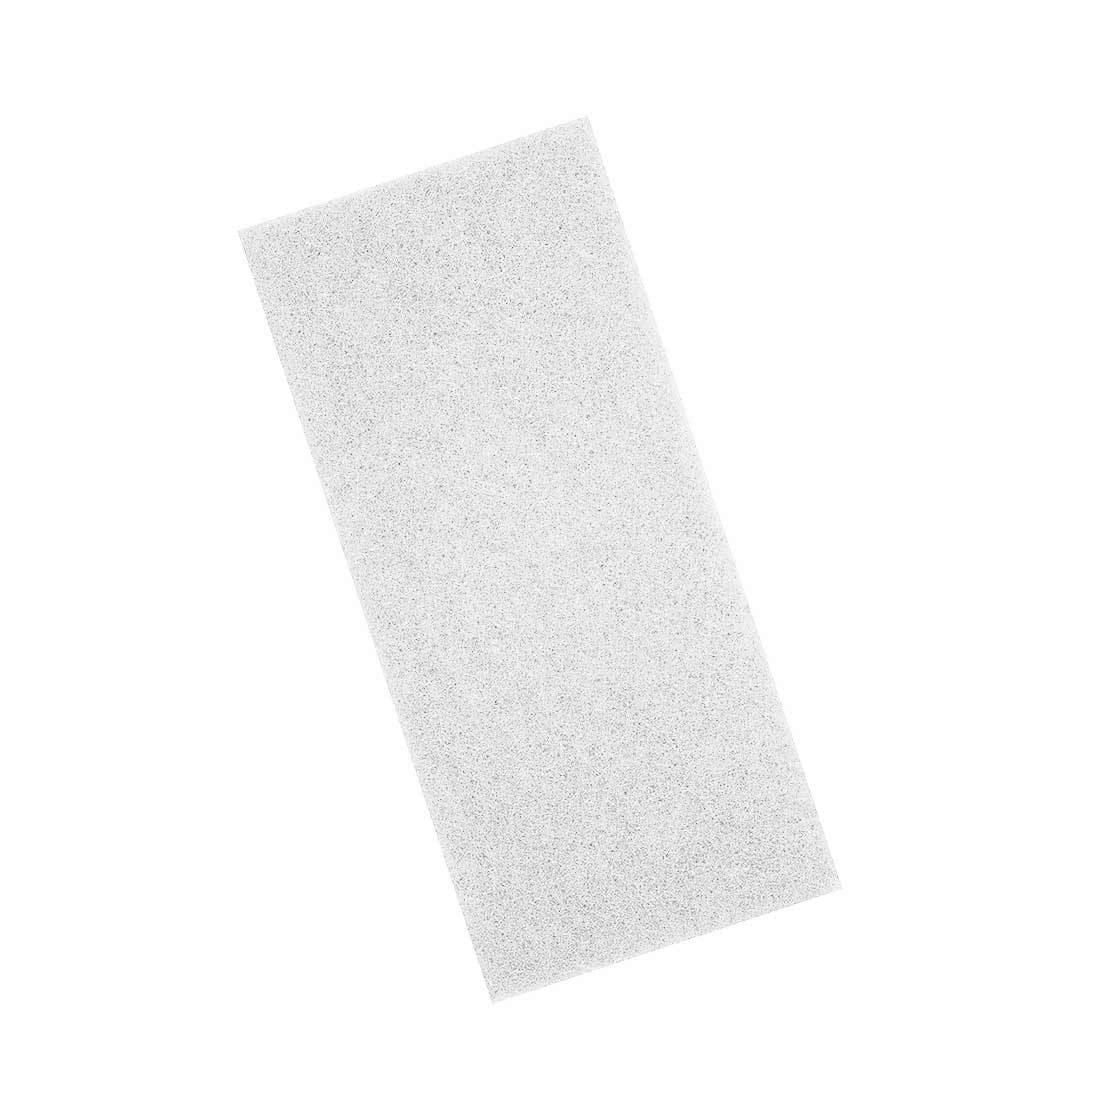 MENZER Polierpad 250 x 115 mm Handpads für Handschleifer, Polyester, 10 Stk., weiß